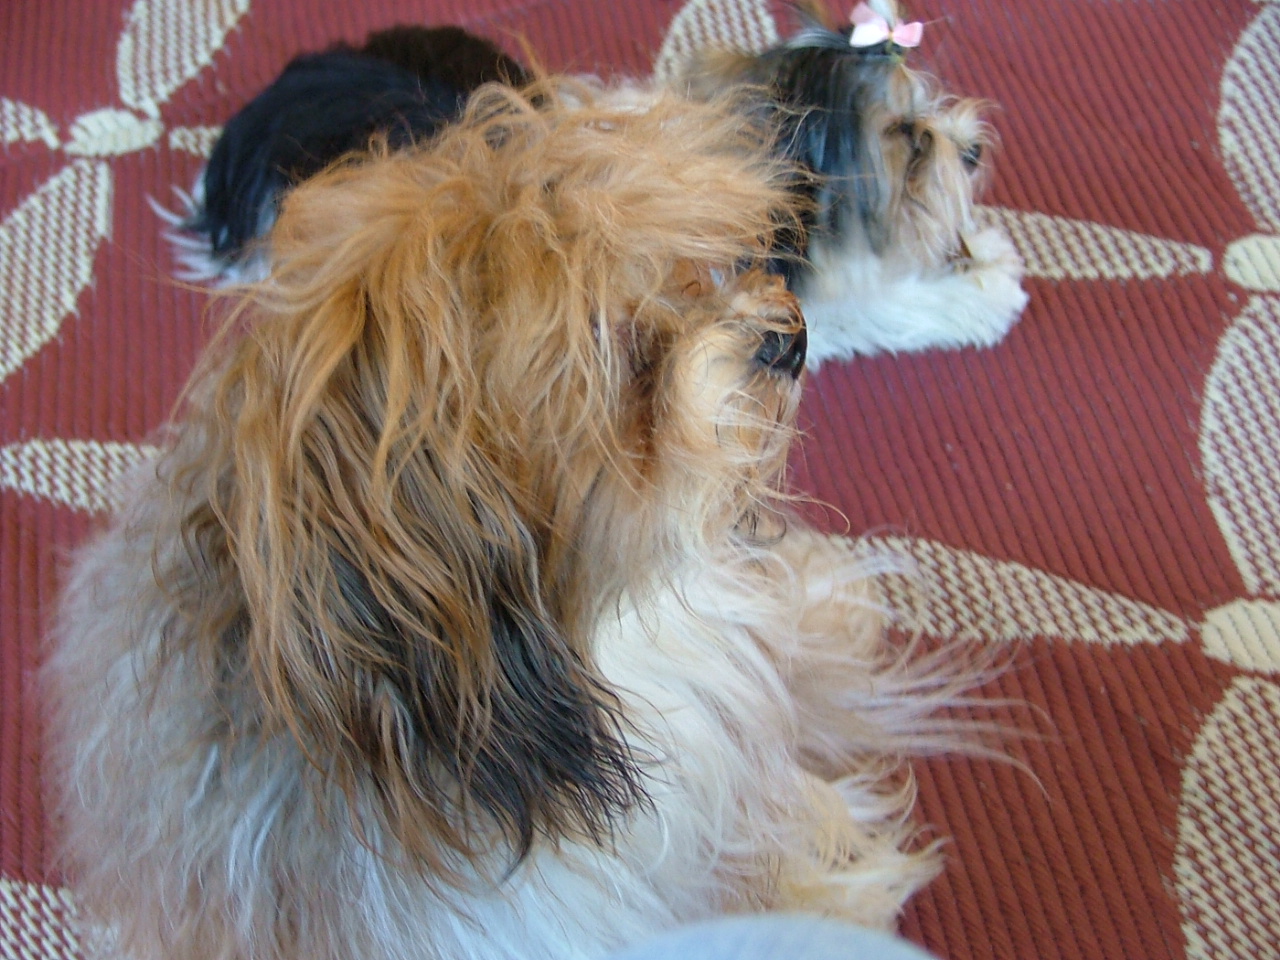 Lokkei (Havanese) with Ellie (Biewer Terrier)